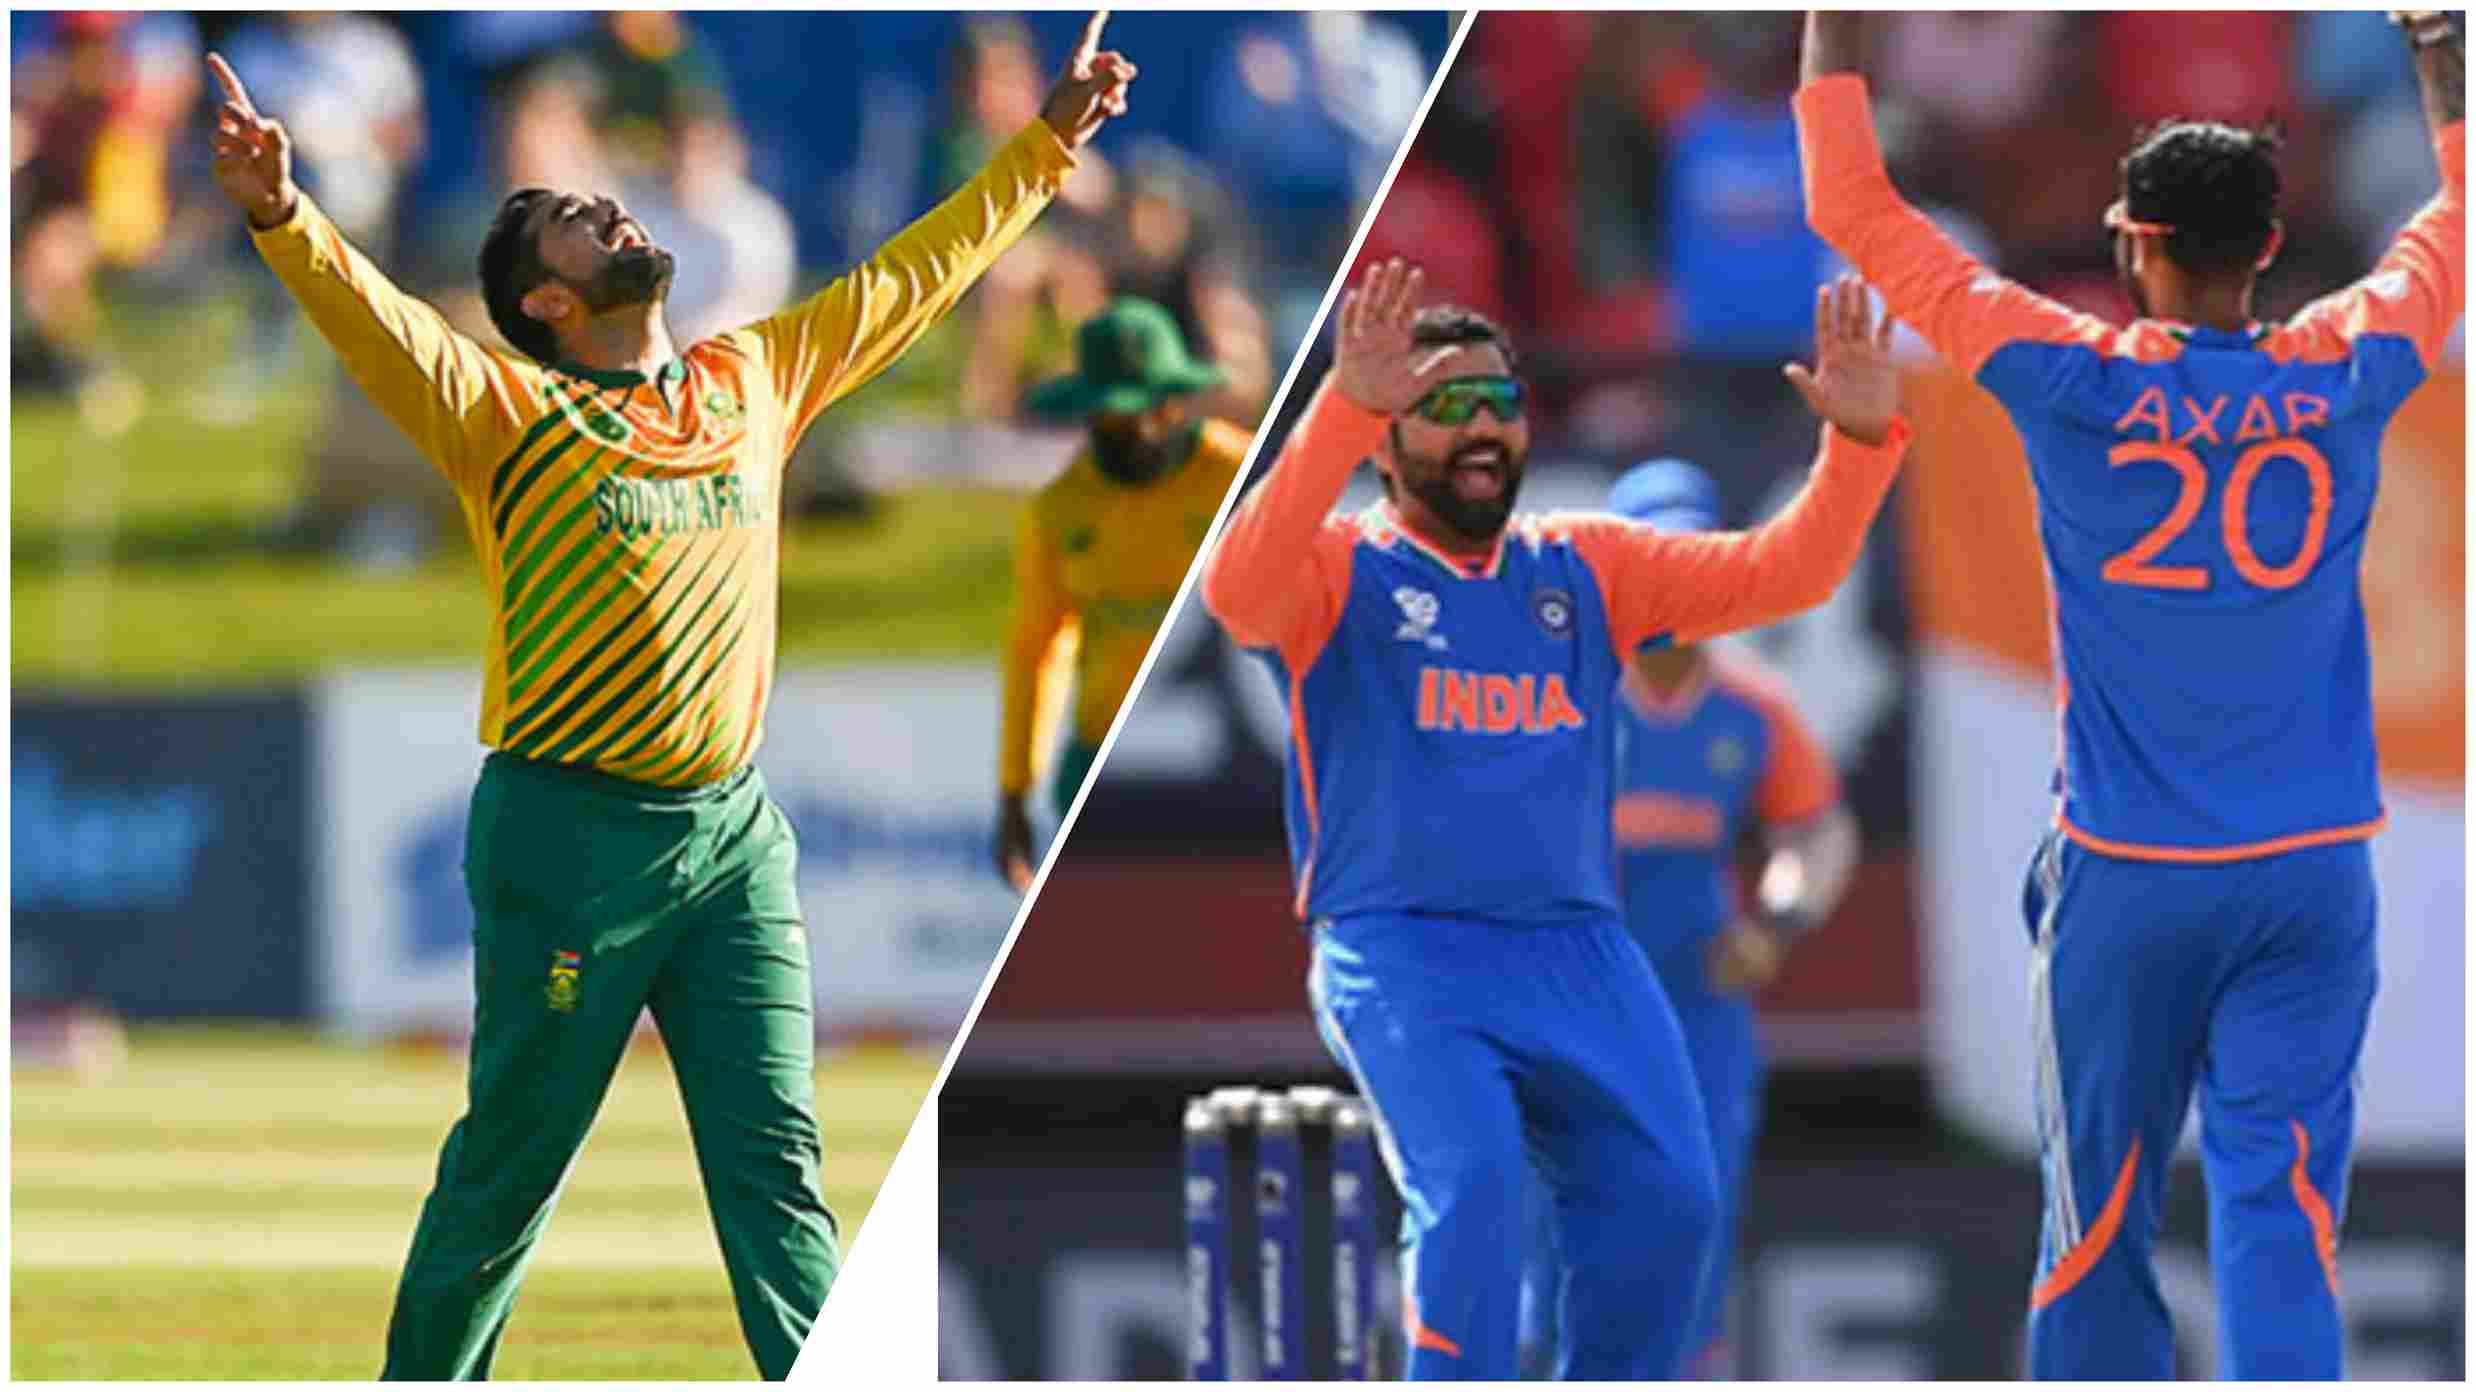 टी-20 विश्व कप के रोमांचक फाइनल में भारत का मुकाबला दक्षिण अफ्रीका से, किसके सिर सजेगा ताज